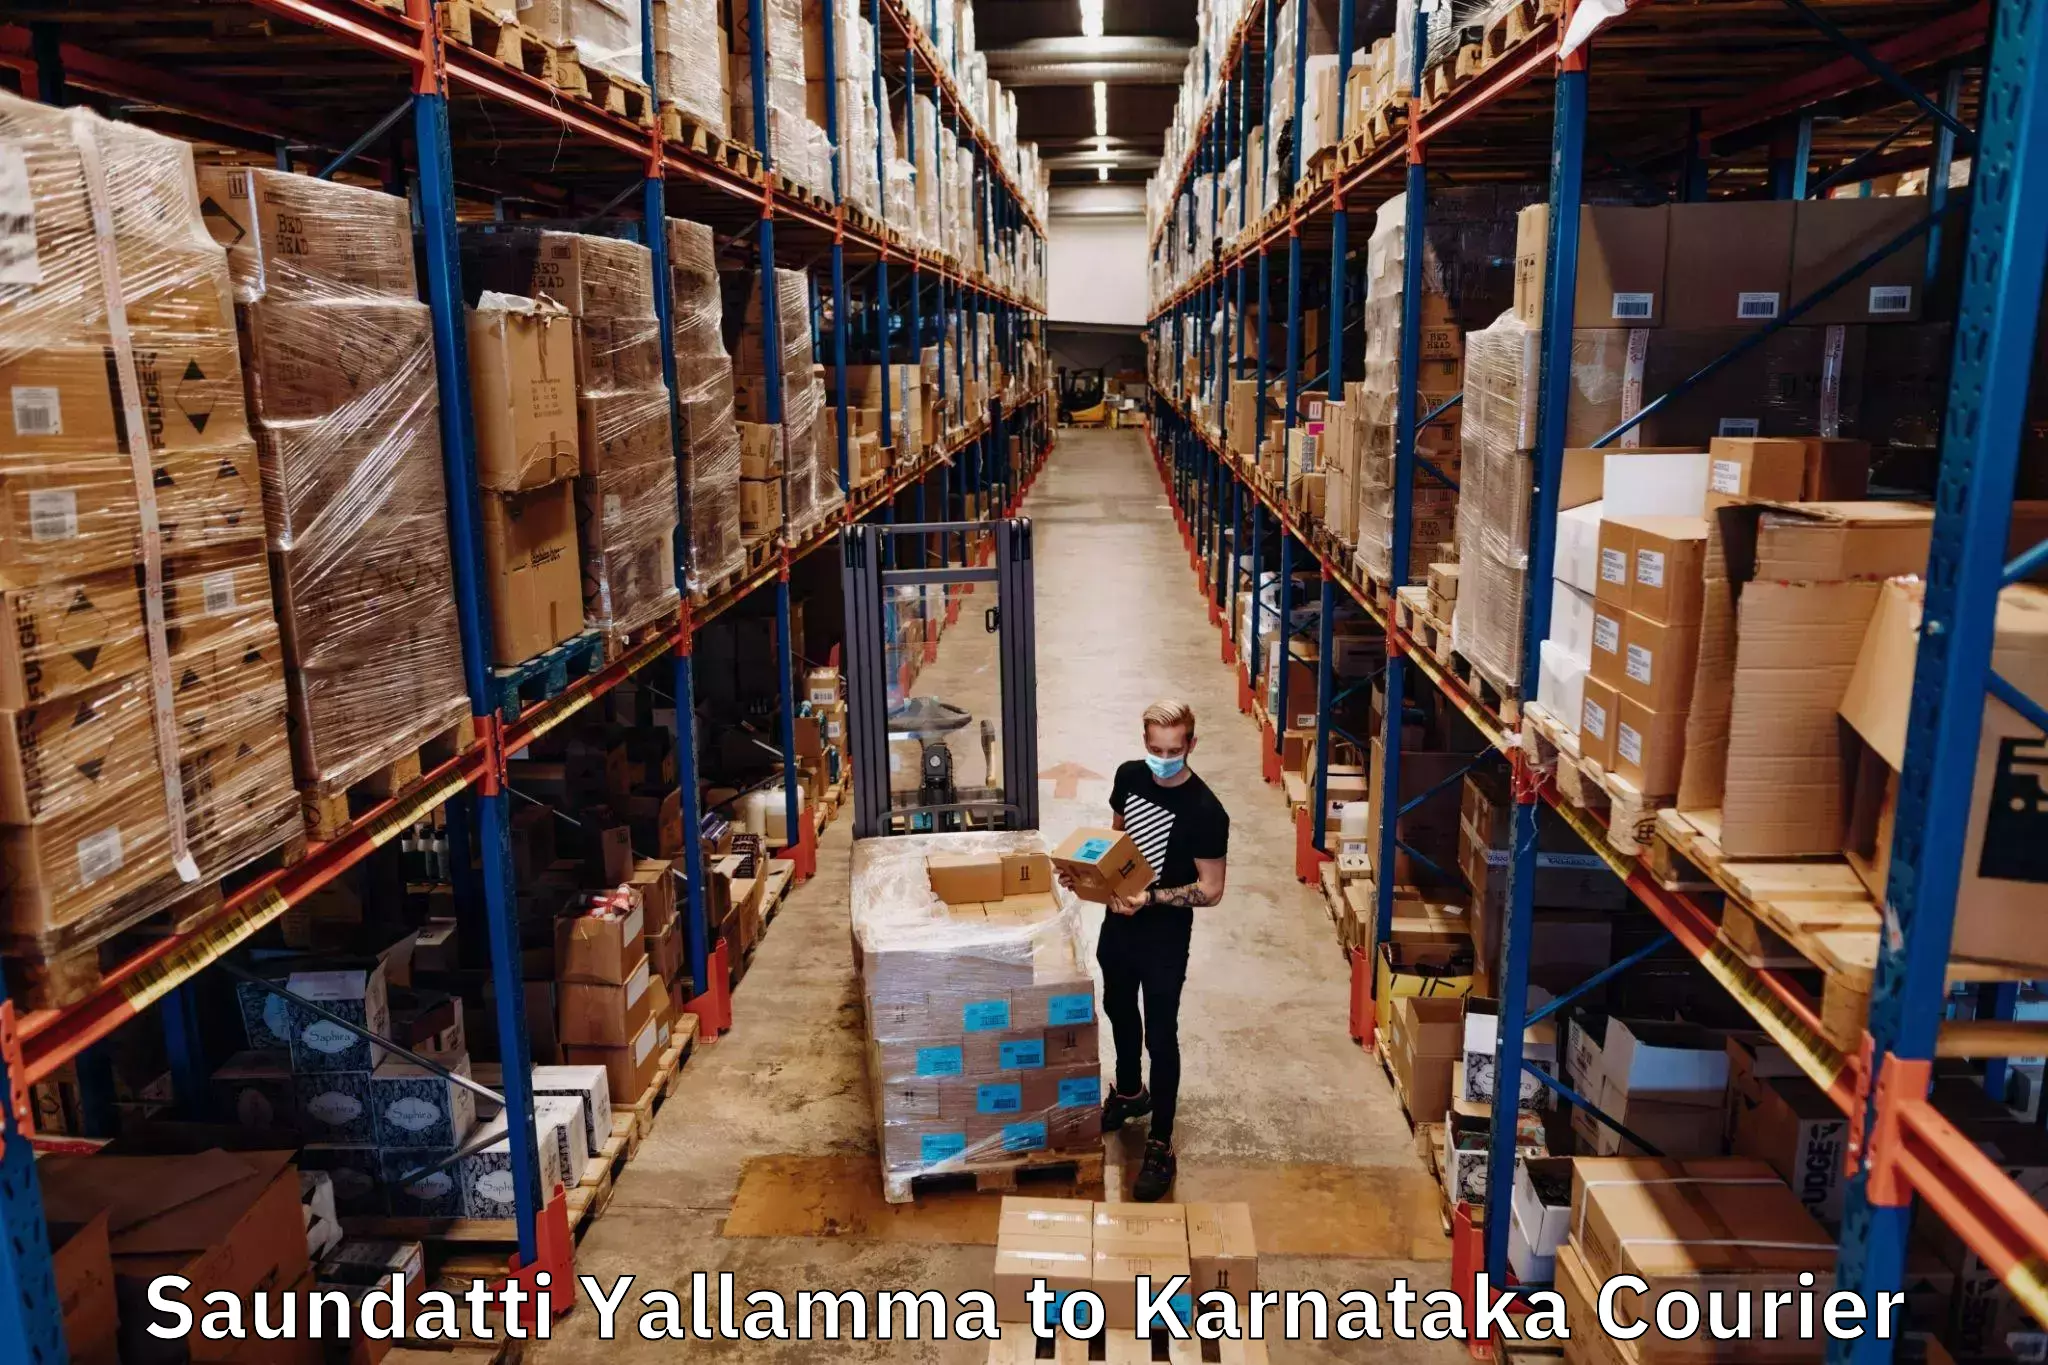 Customer-centric shipping Saundatti Yallamma to Bhatkal